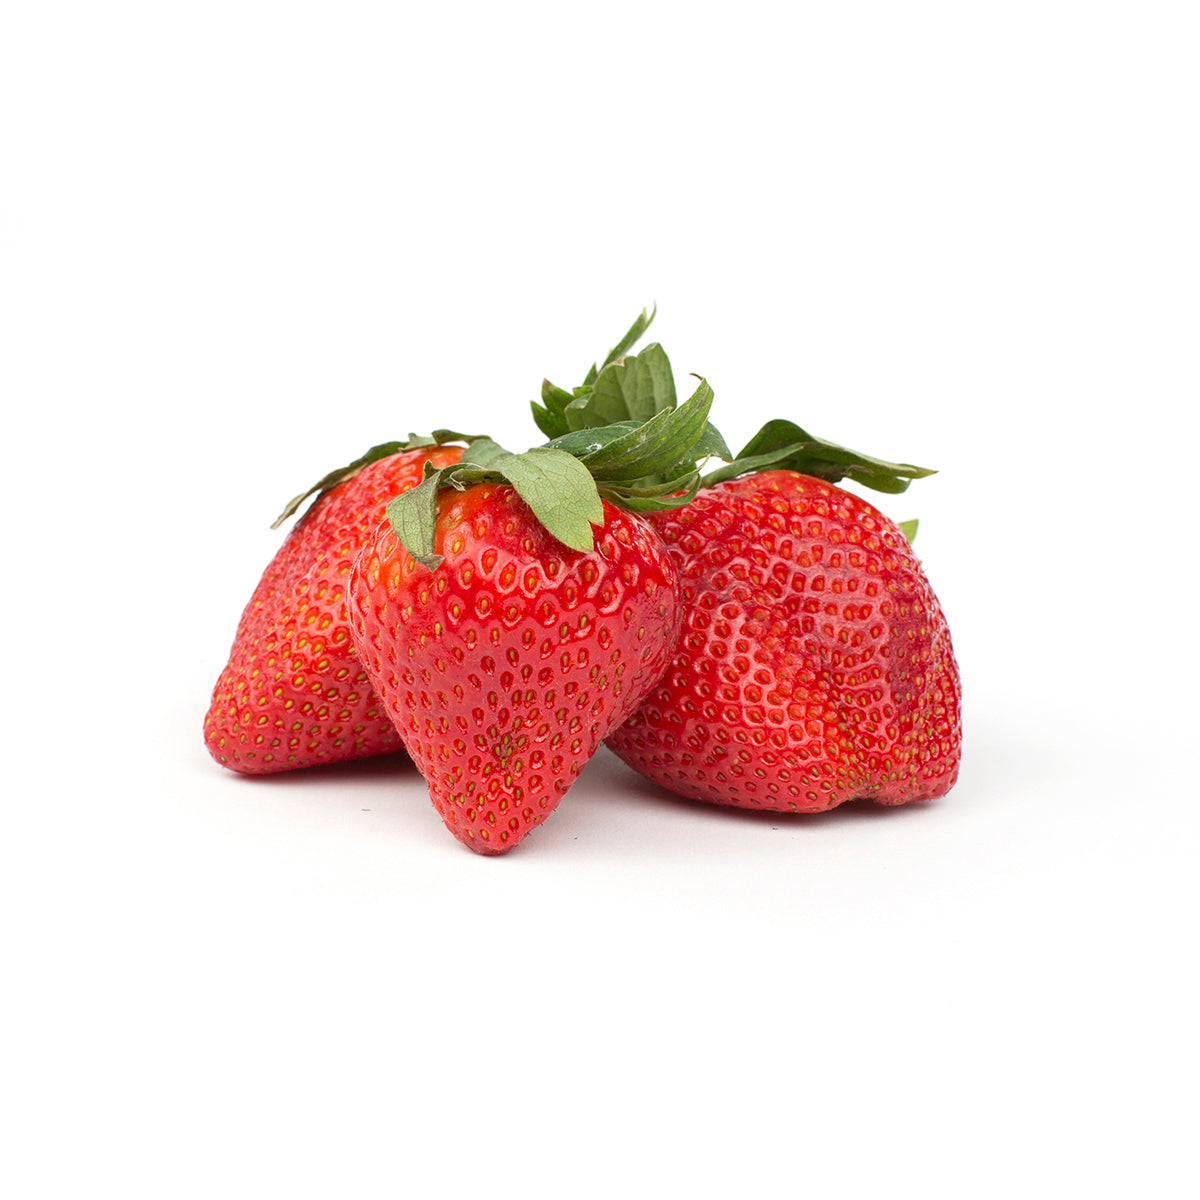 Driscoll'S Strawberries 1 LB